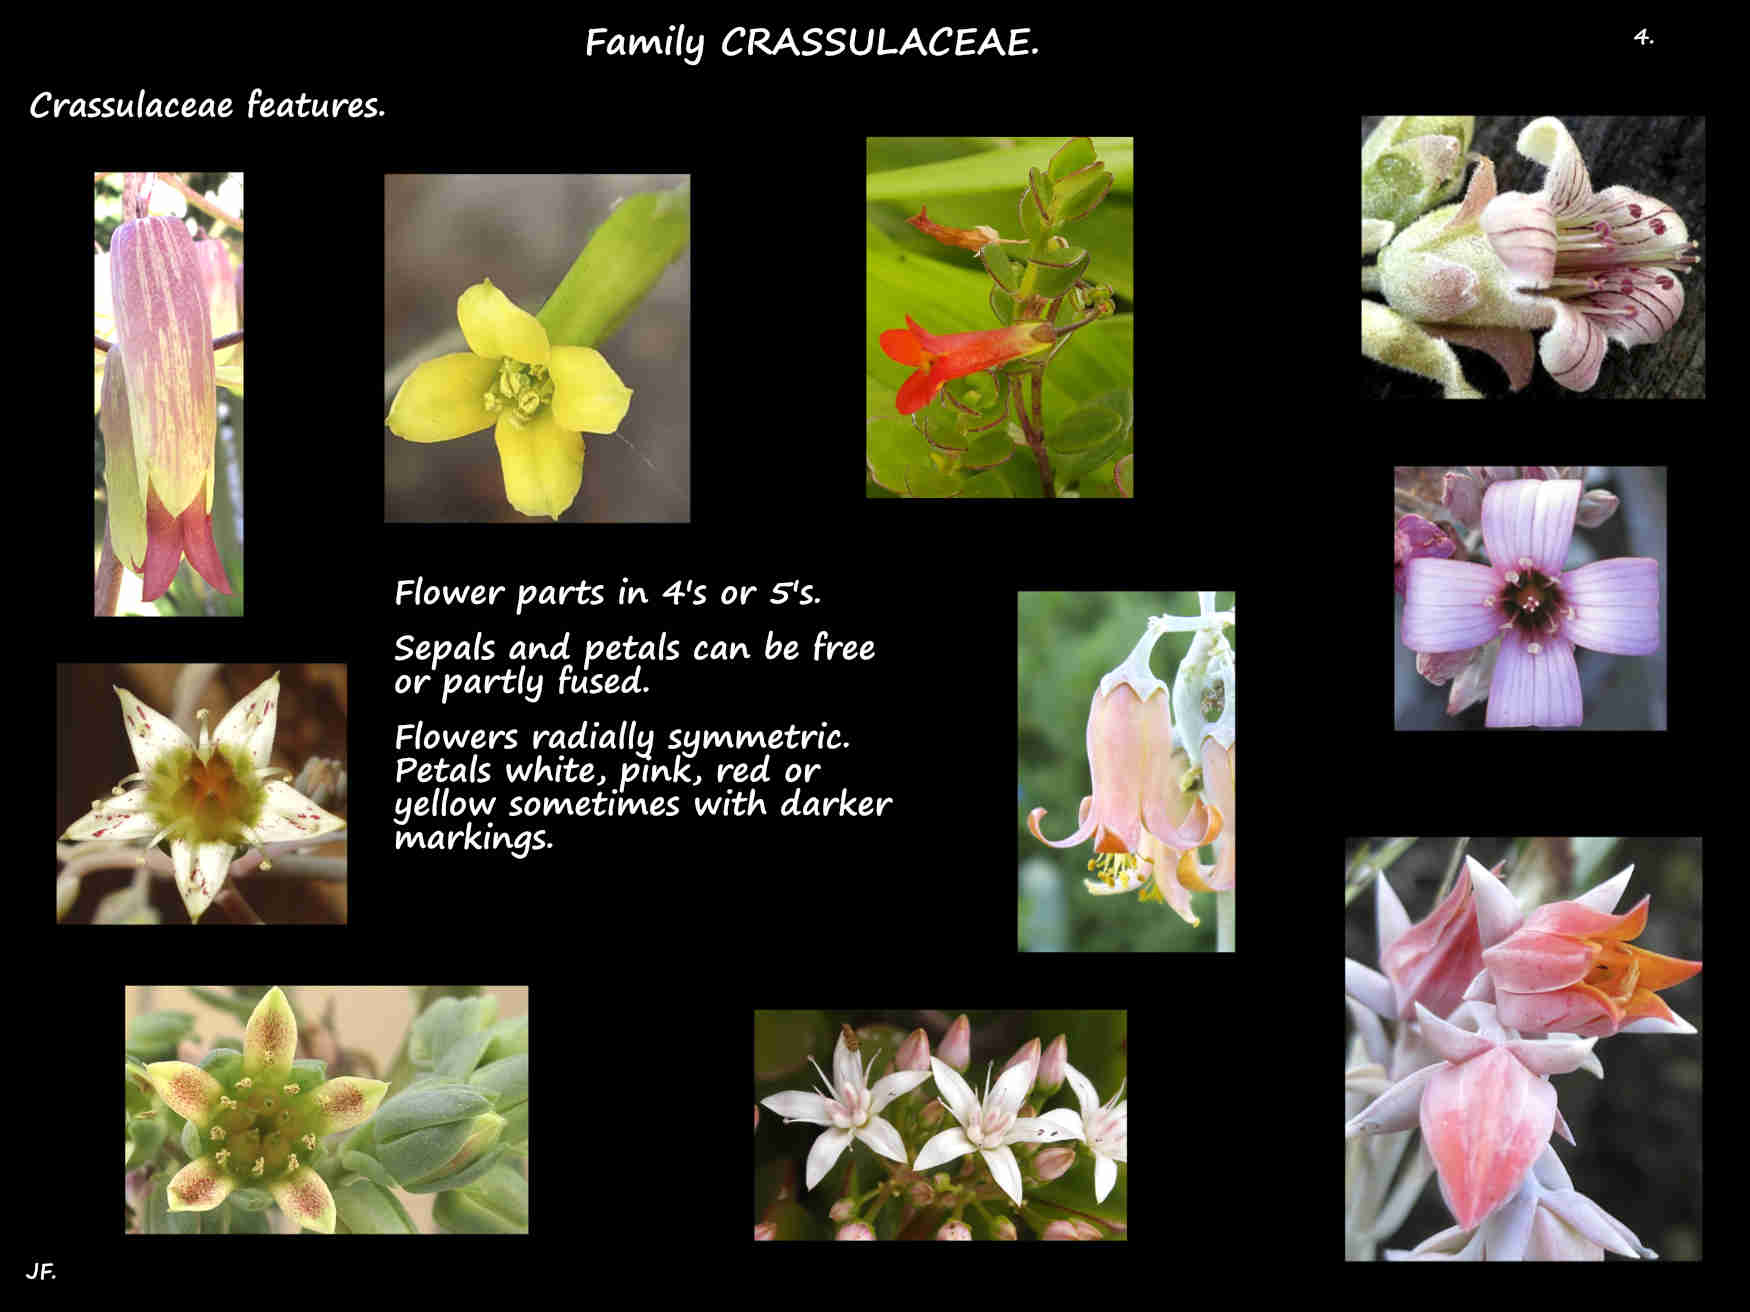 4 Some Crassulaceae flowers